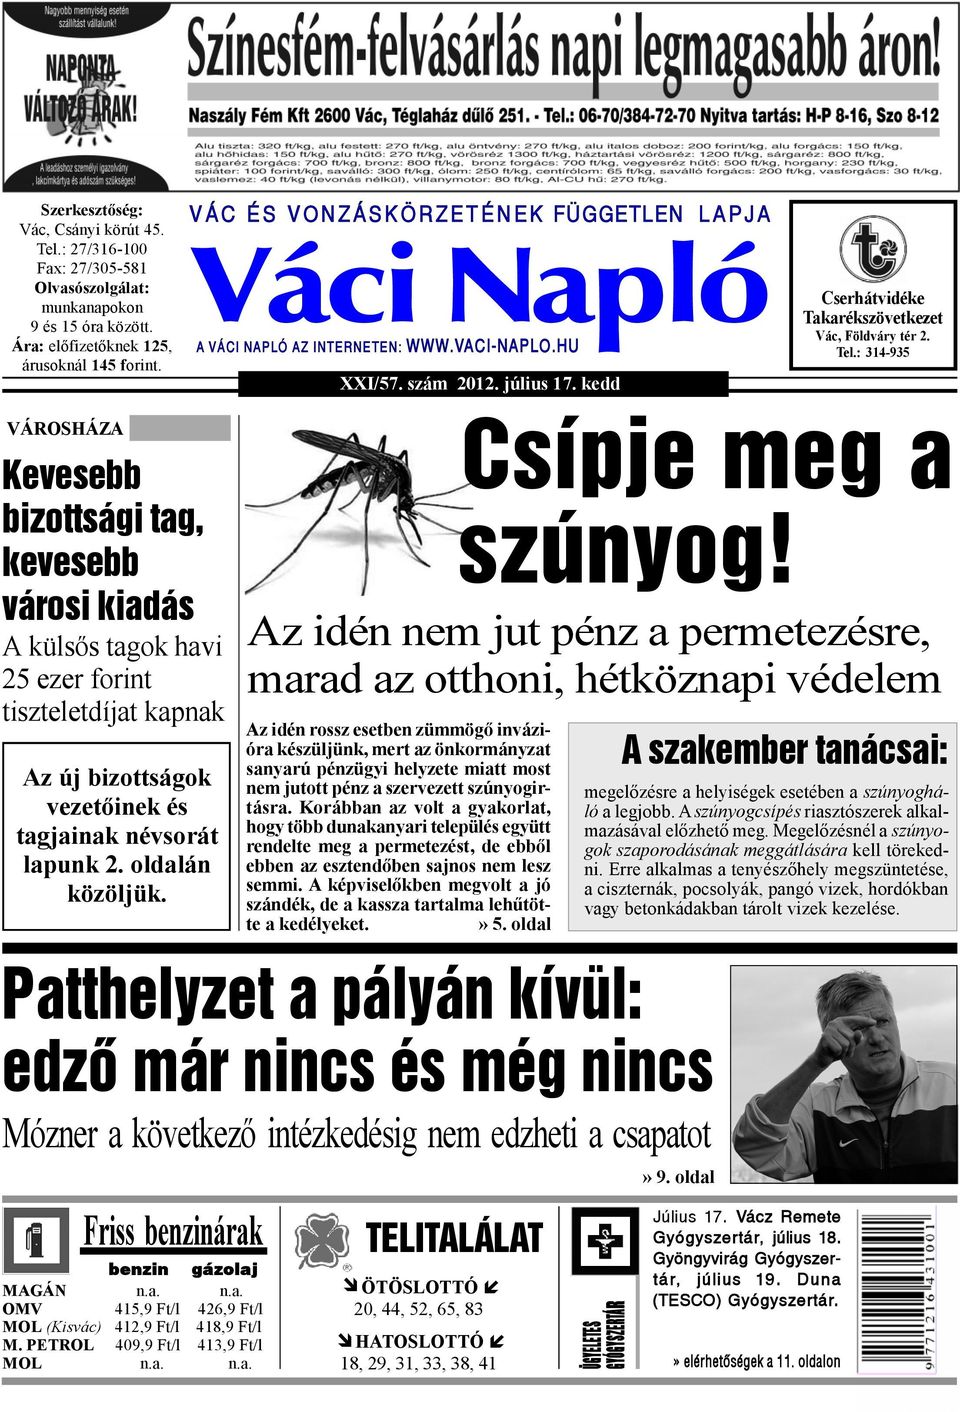 Váci Napló. Mint arról pénteki lapszámunkban beszámoltunk, szocialista  javaslatra átalakították a szakbizottságokat a - PDF Ingyenes letöltés